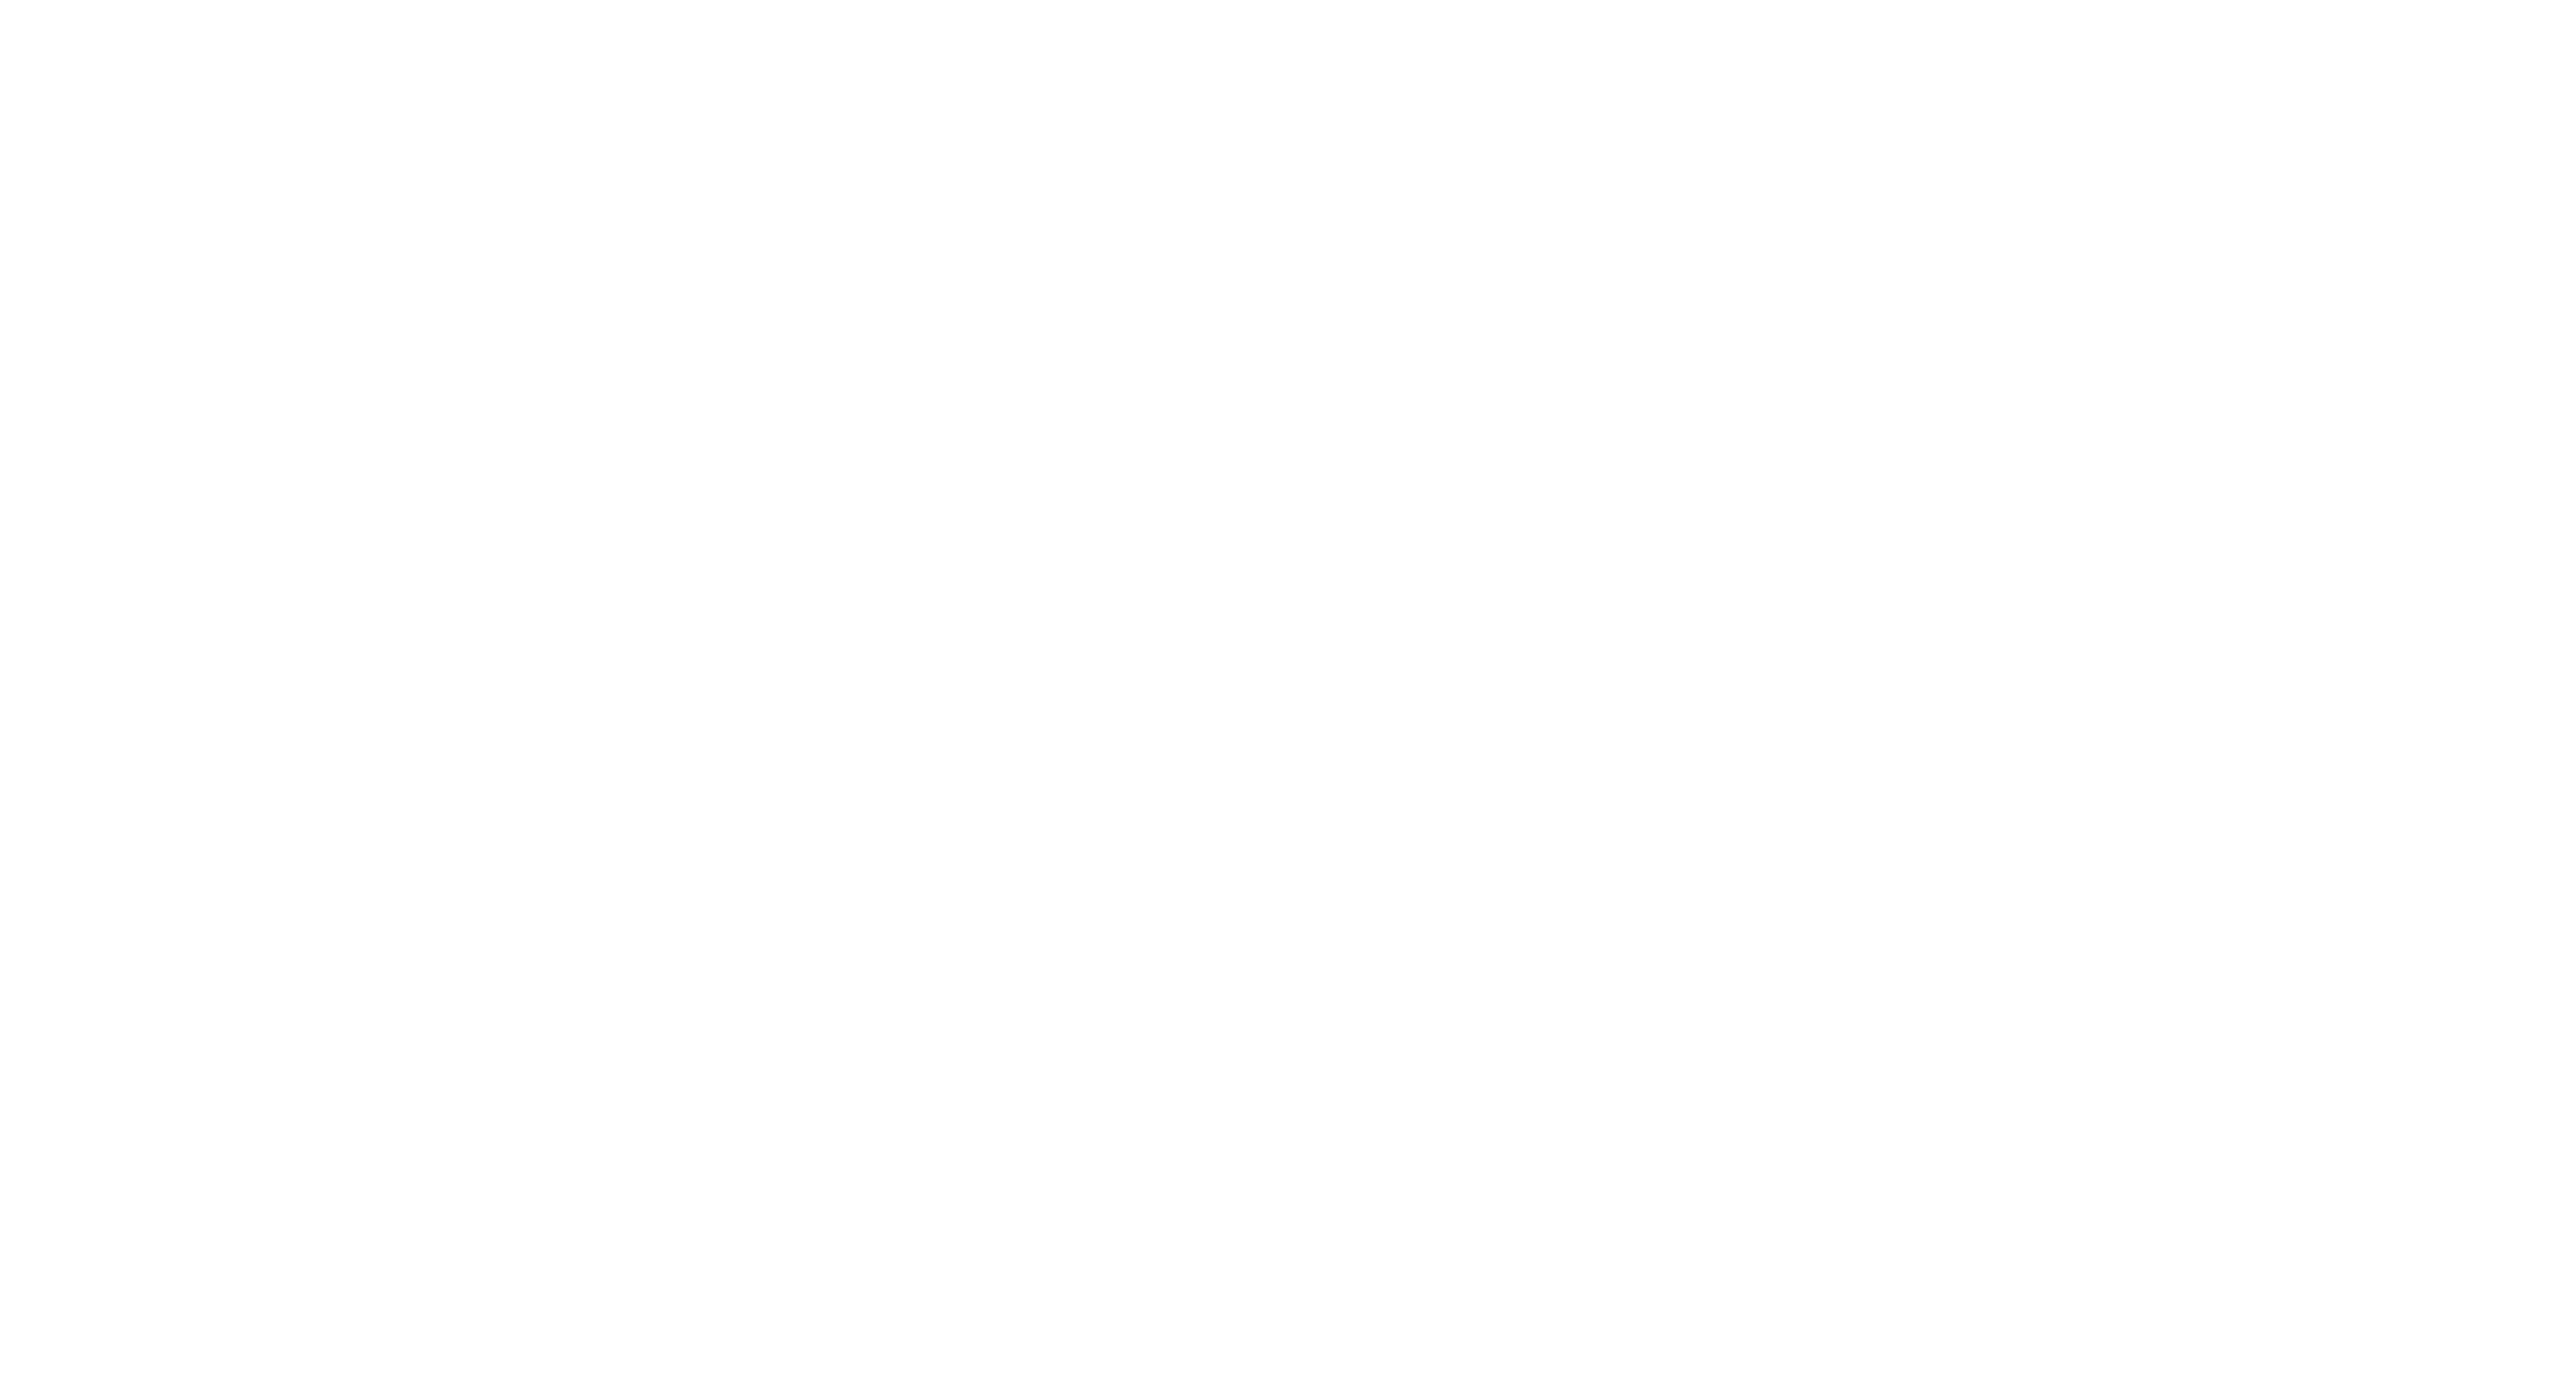 Intralogistixxx